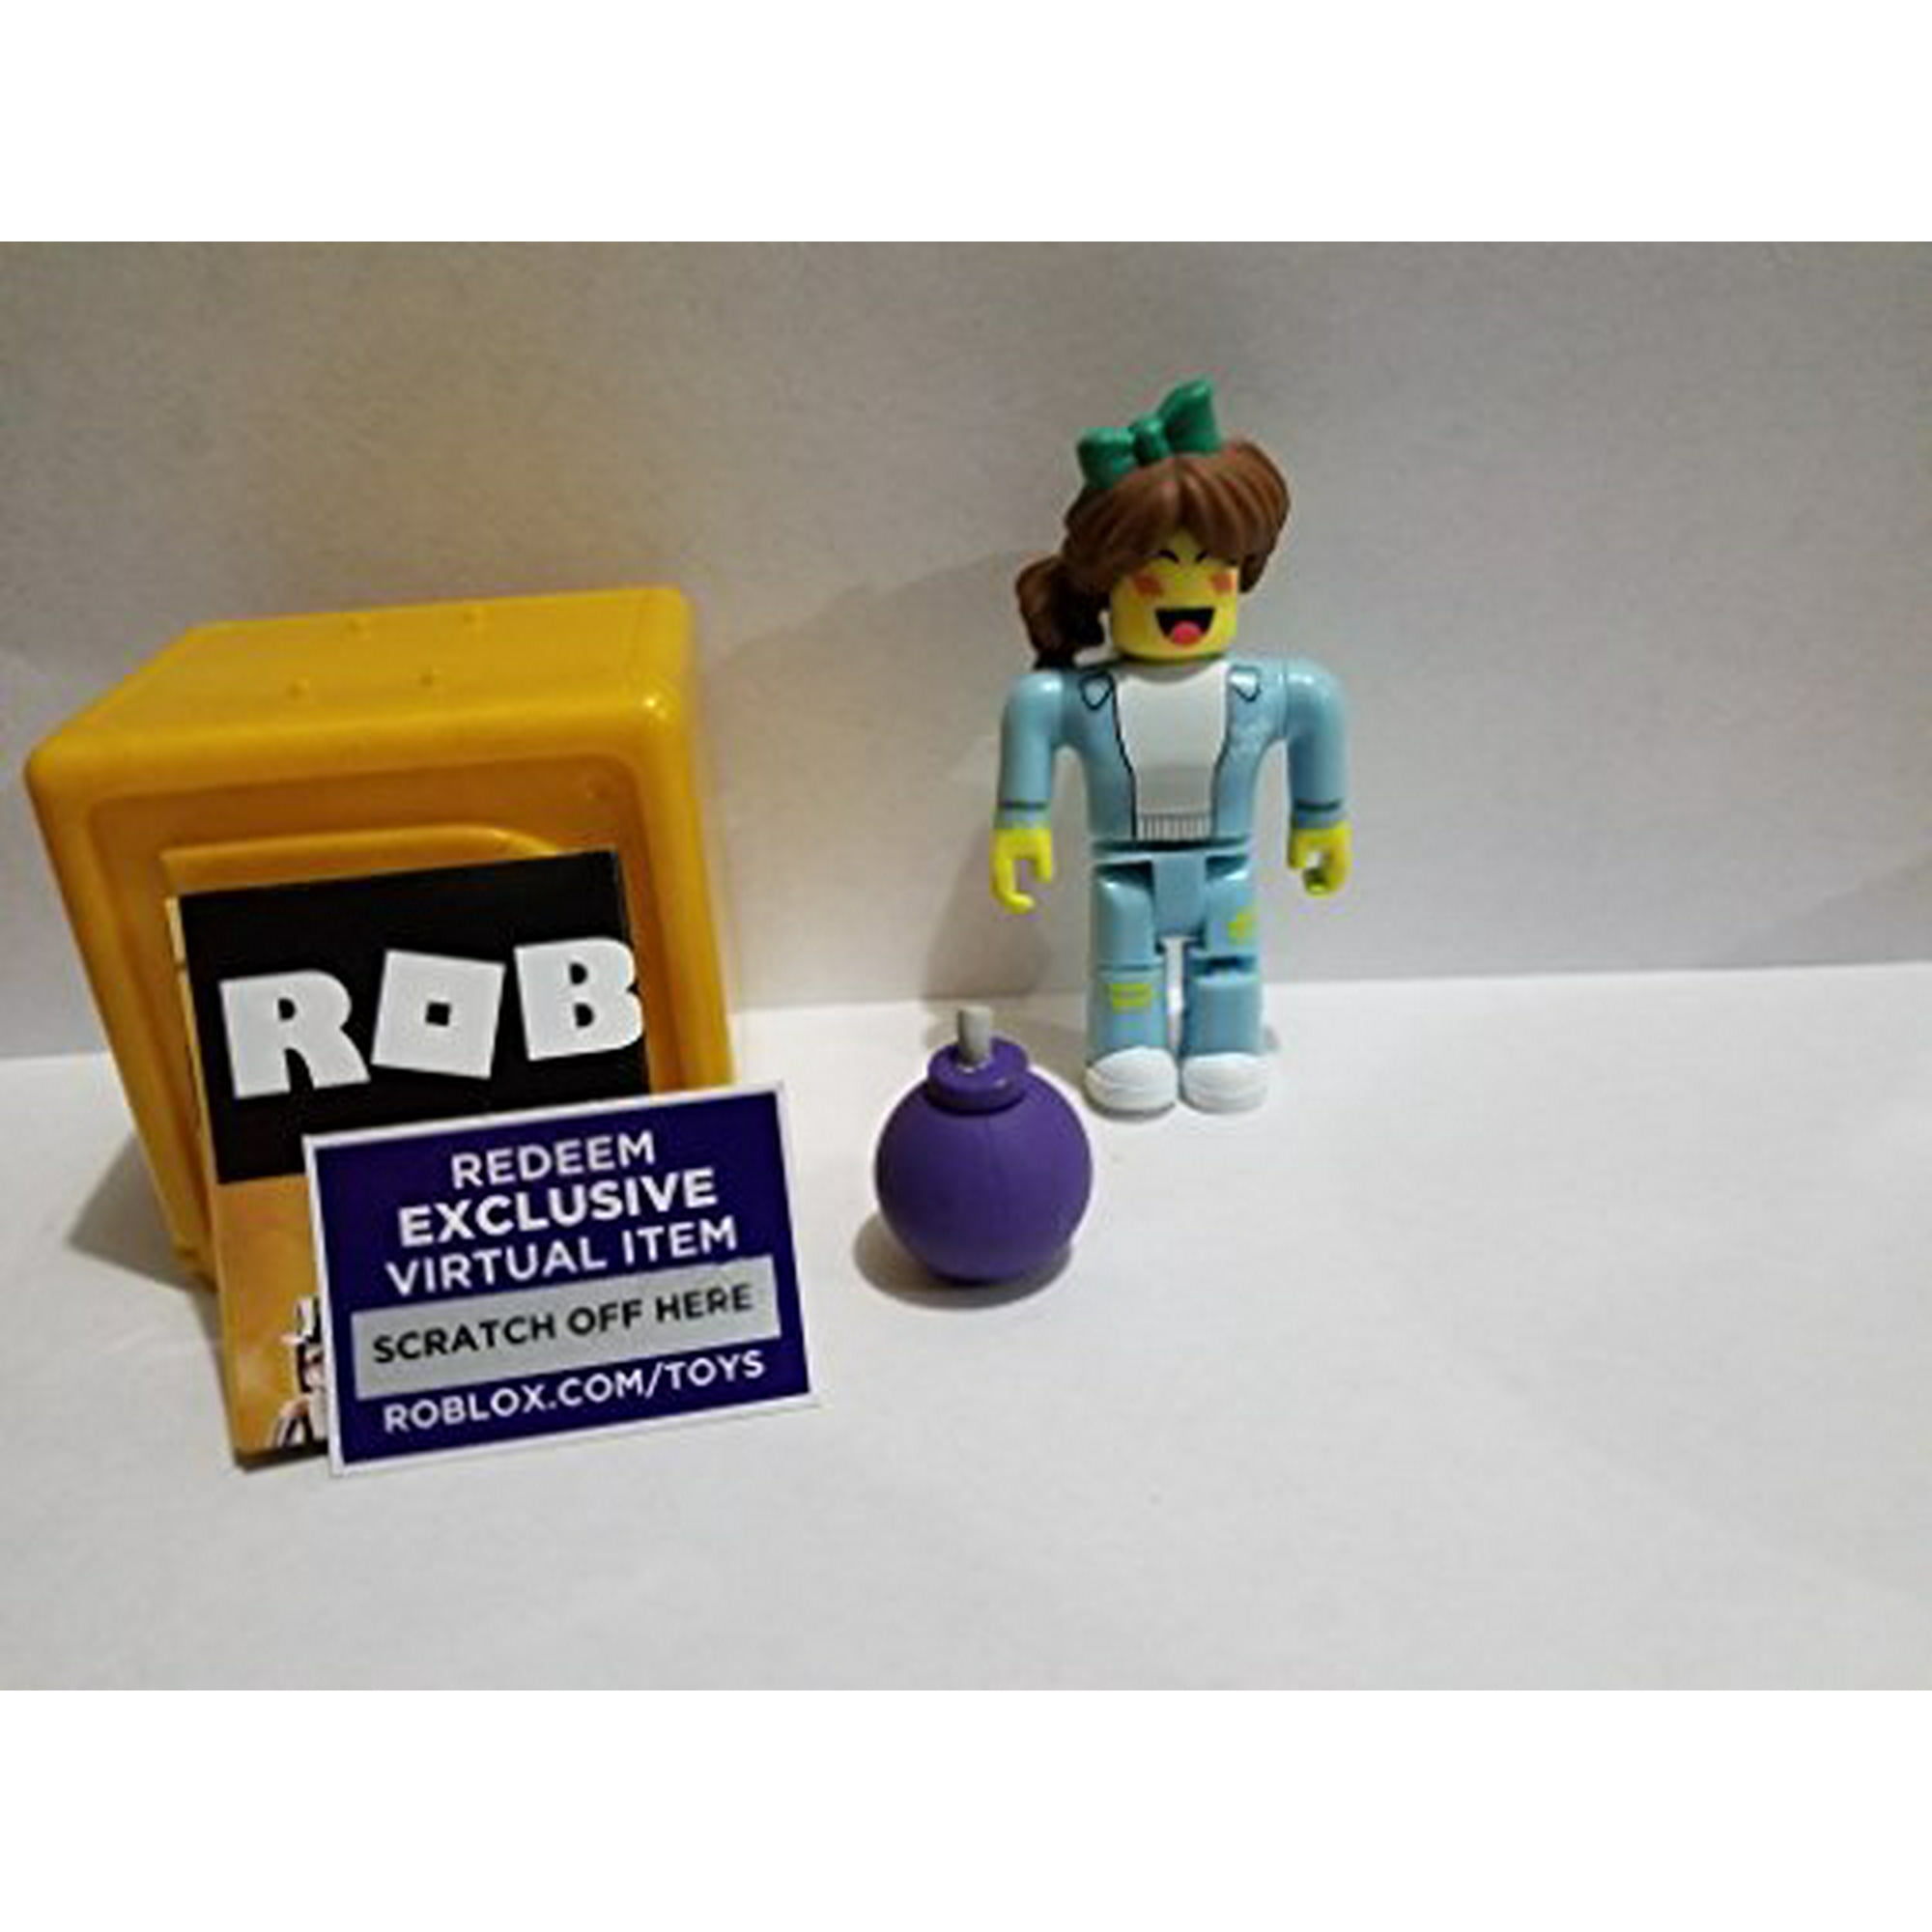 Roblox Gold Celebrity Series Super Bomb Survival Shopgirl Action Figure Mystery Box Virtual Item Code 2 5 Walmart Canada - anti bomb roblox